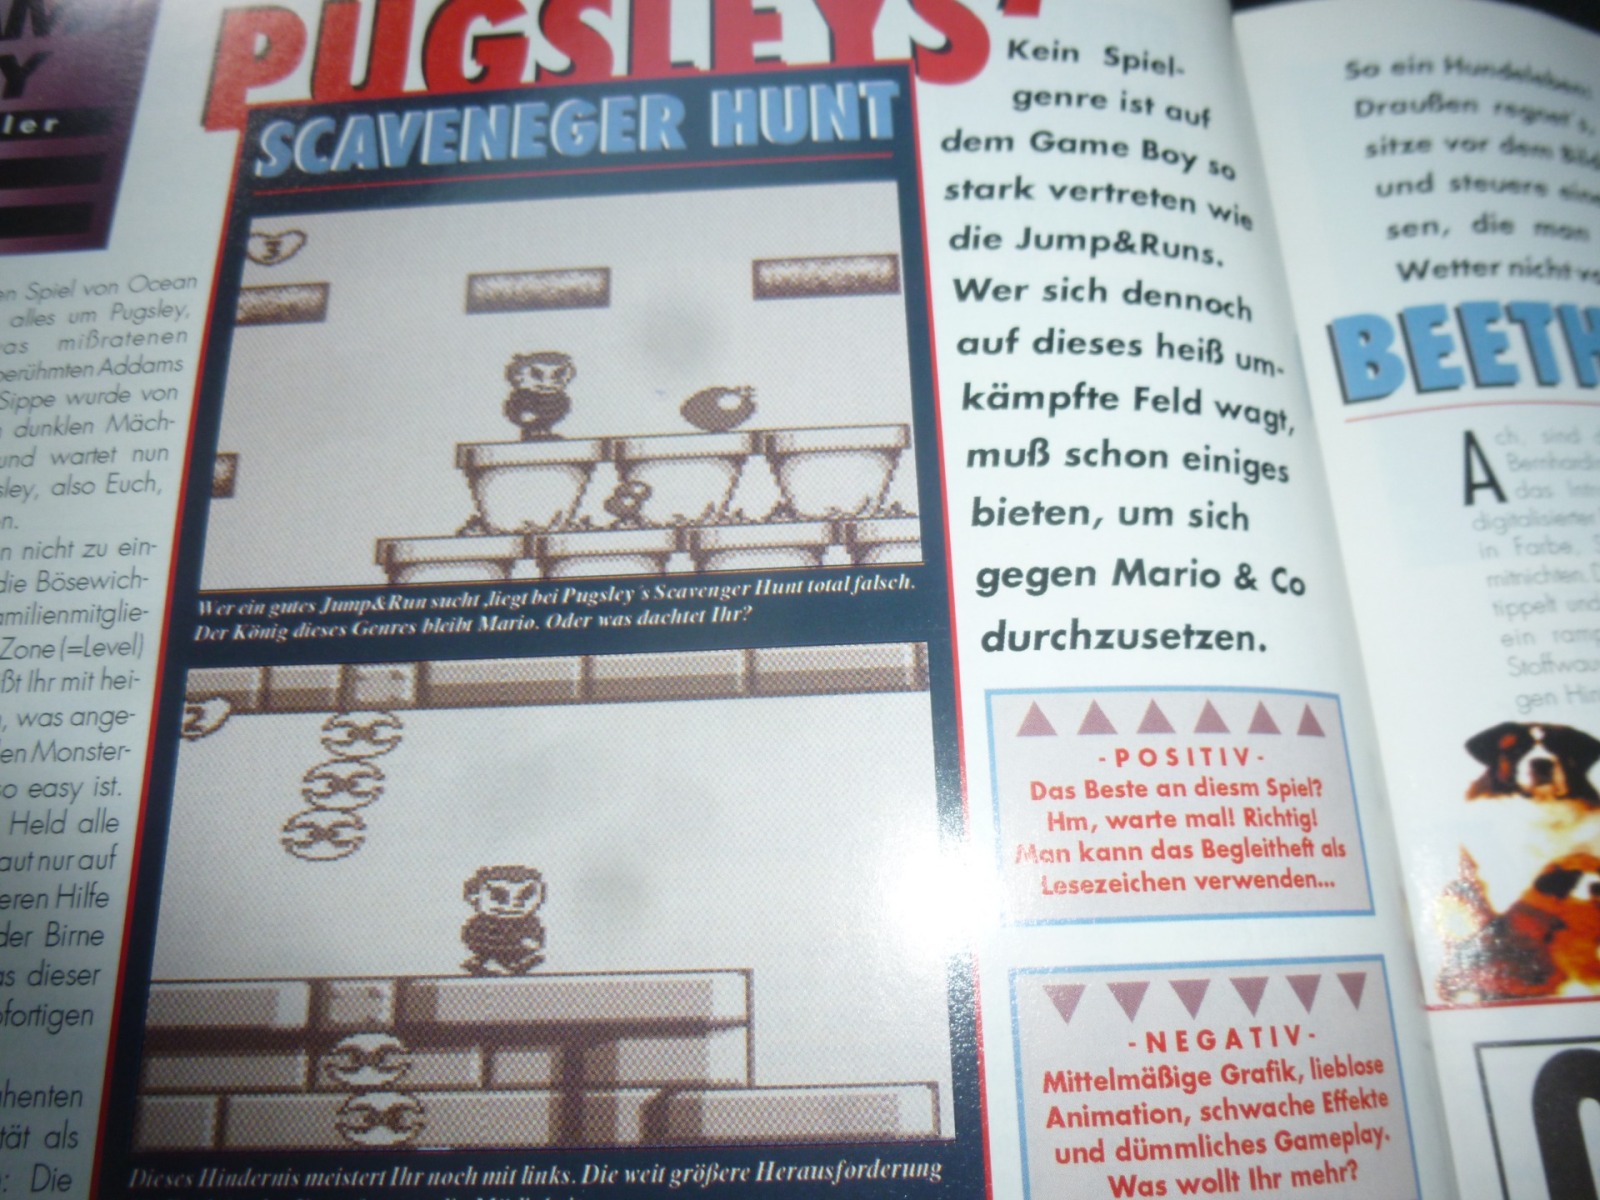 TOTAL Das unabhängige Magazin - 100 Nintendo - Ausgabe 12/93 1993 21